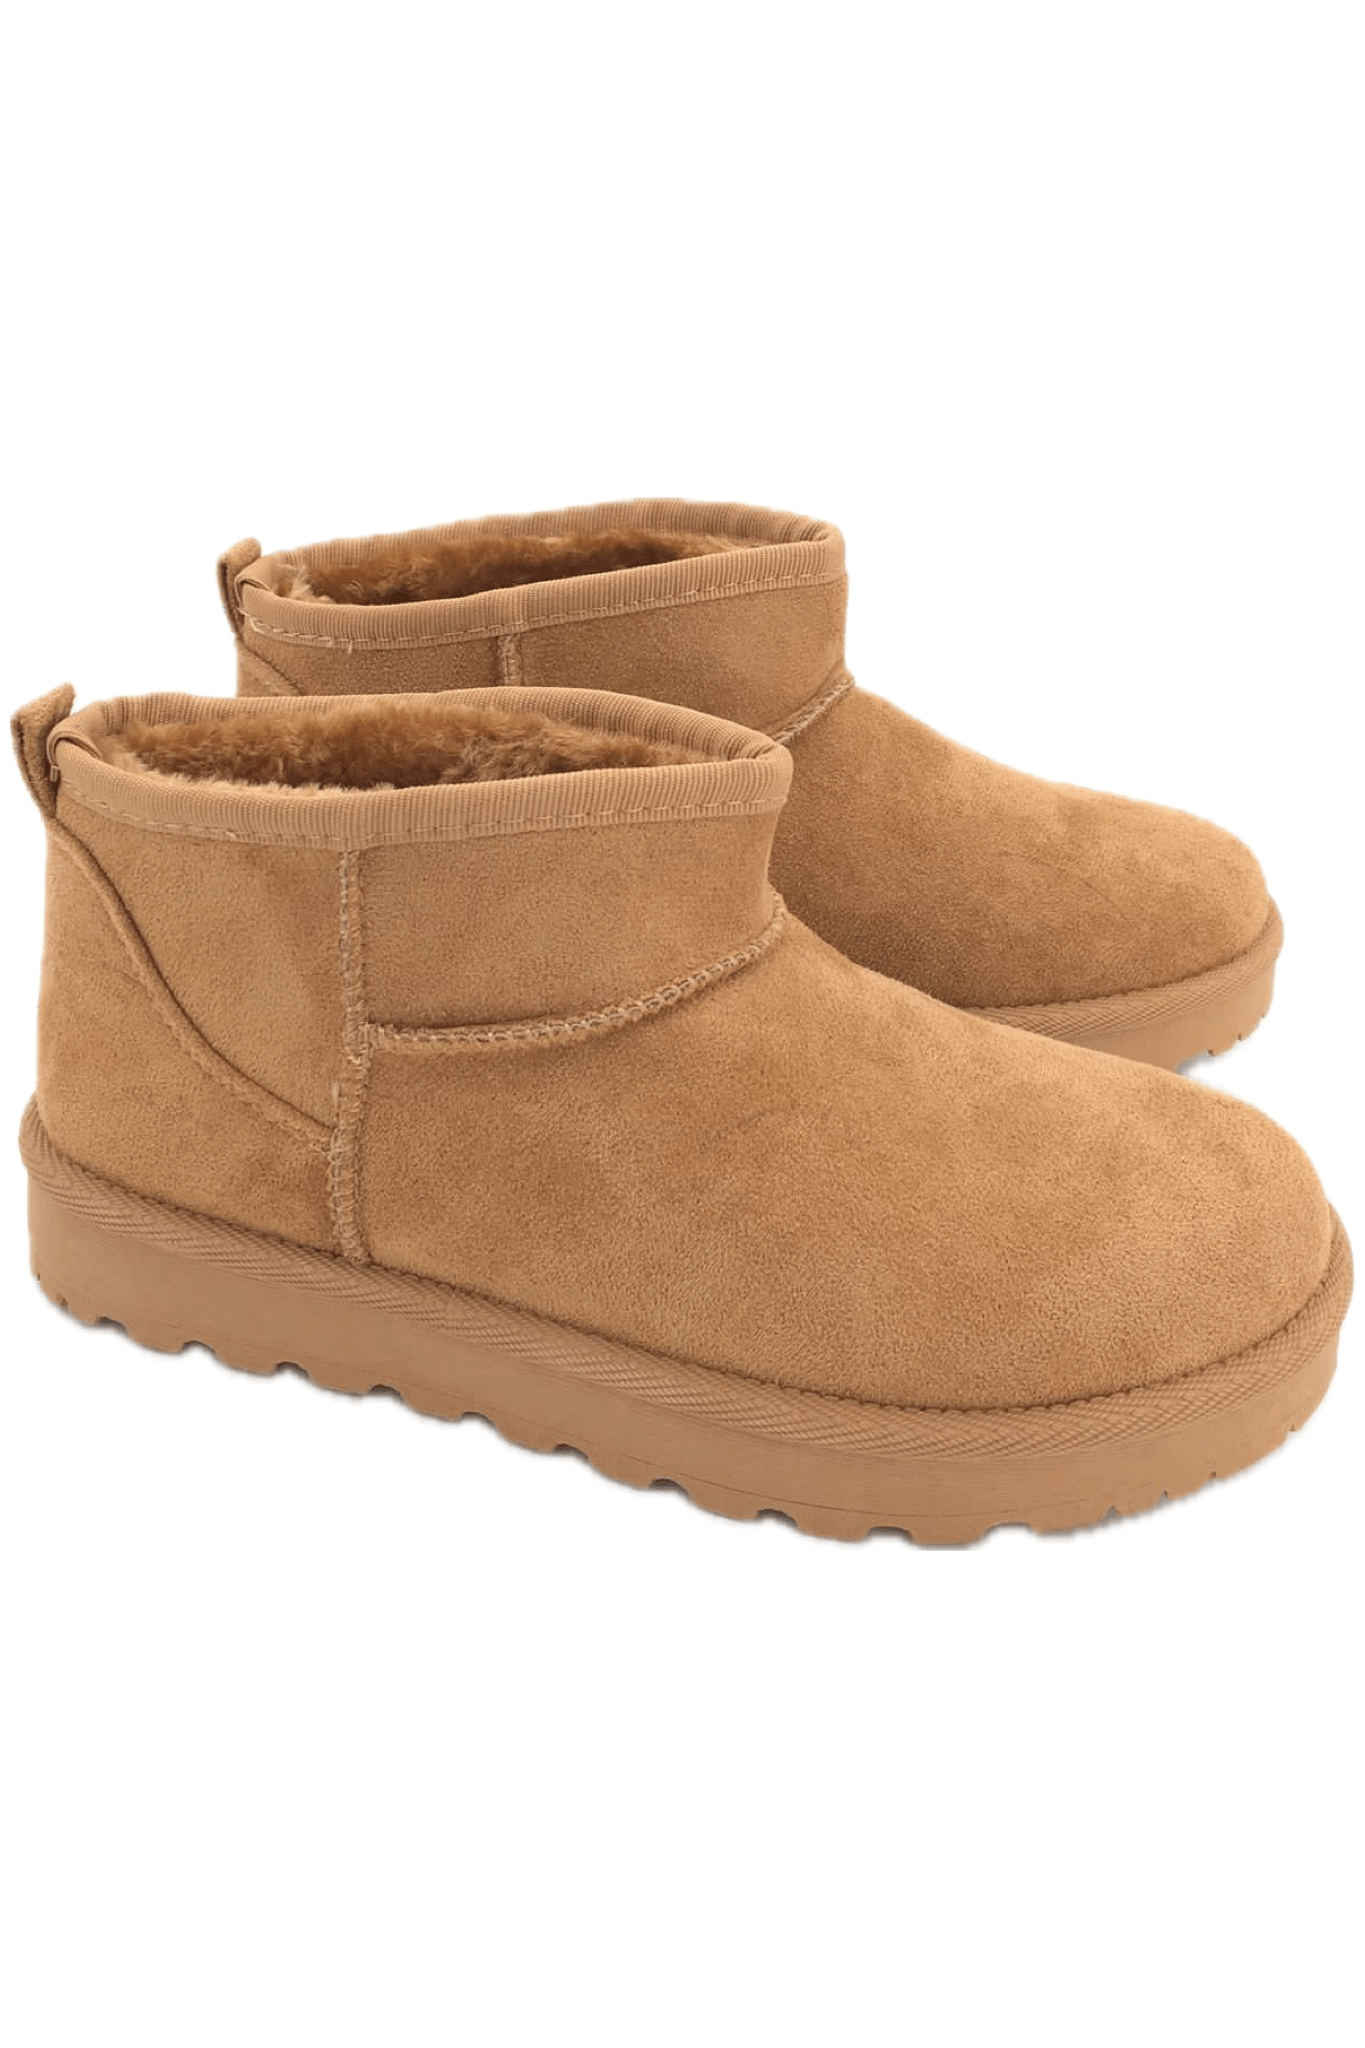 Comfy boots low camel -